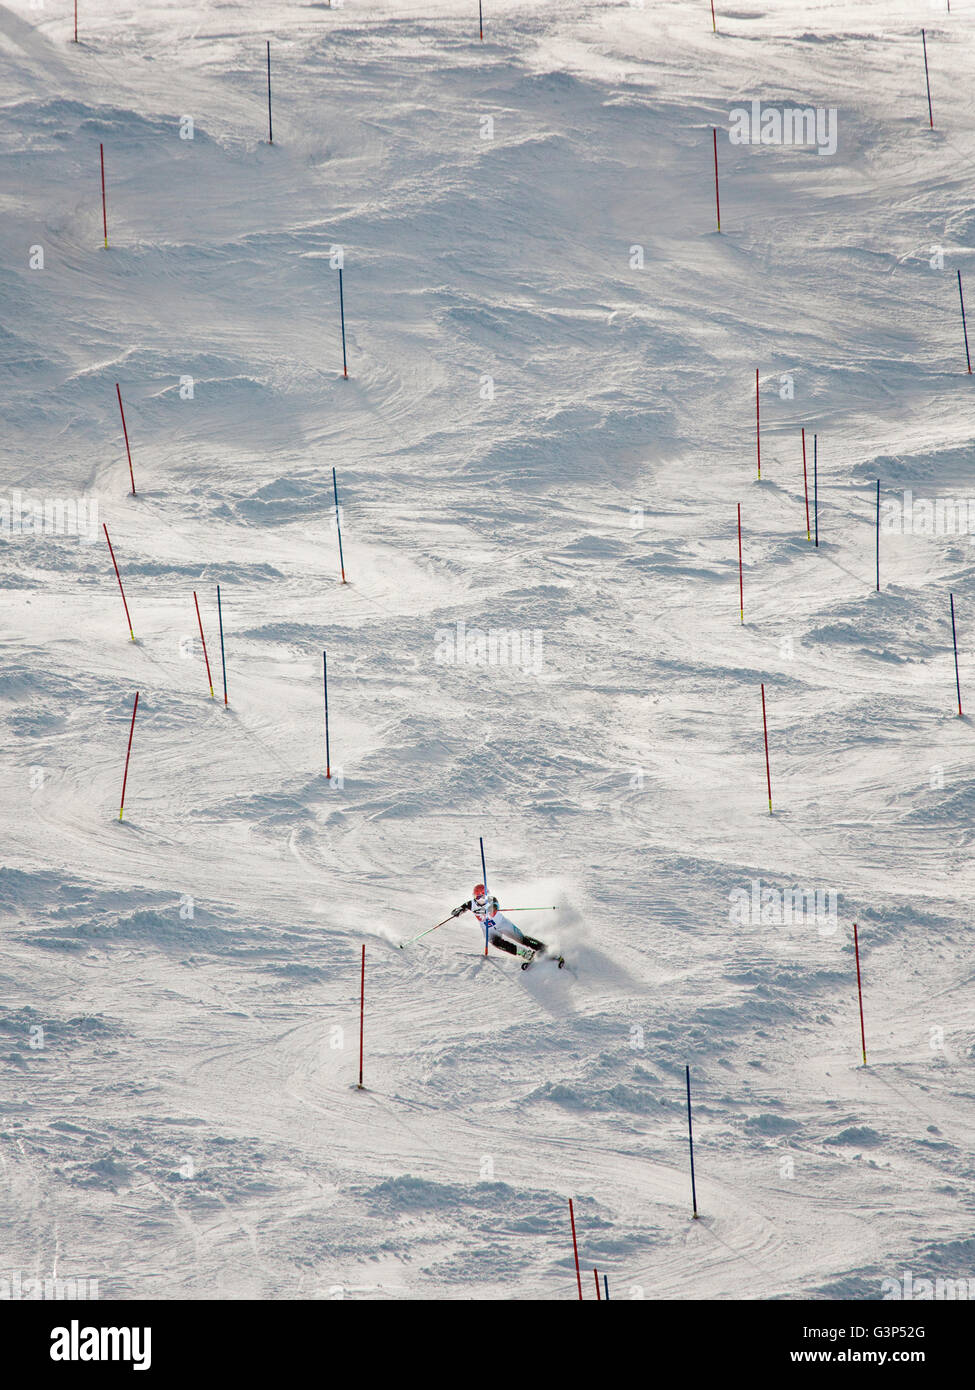 Sweden, Medelpad, Sundsvall, Skier going down slope Stock Photo